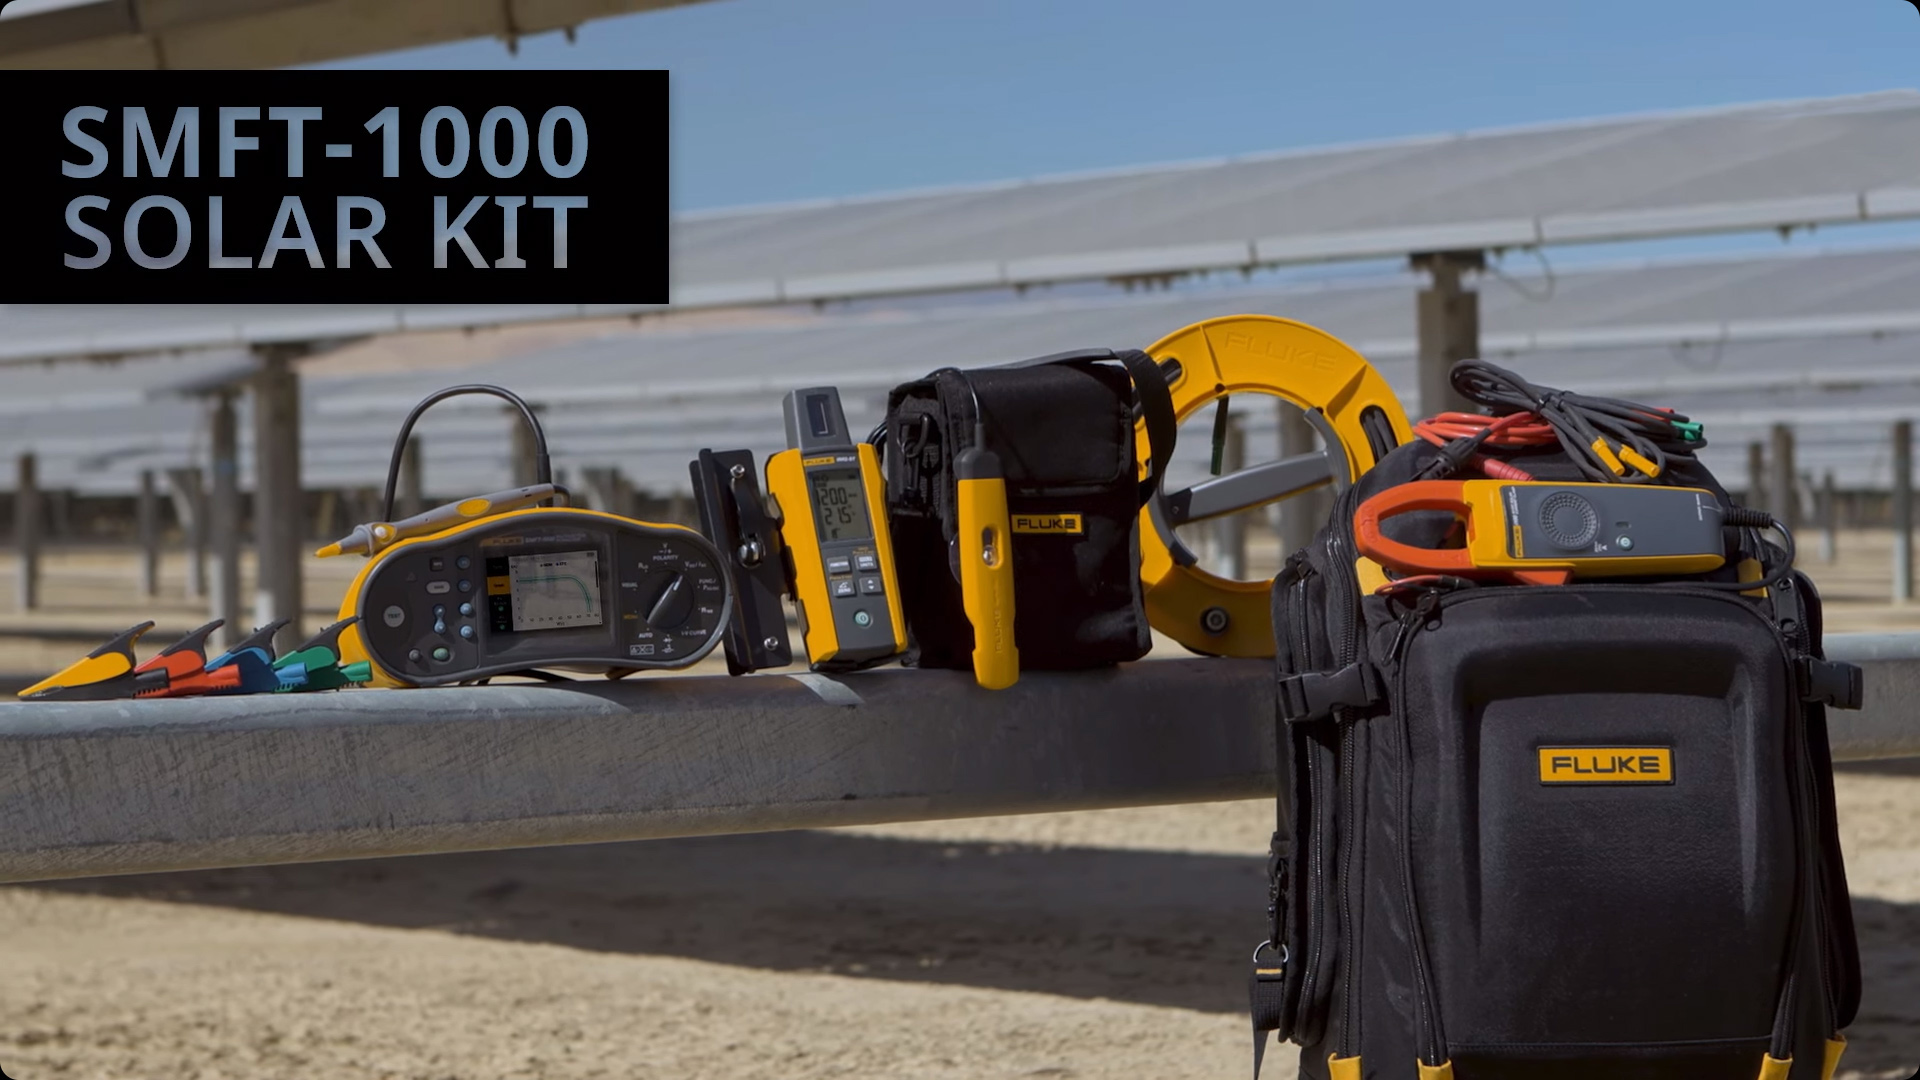 Fluke SMFT-1000 Solar Multifunction PV Tester - Standard Kit.